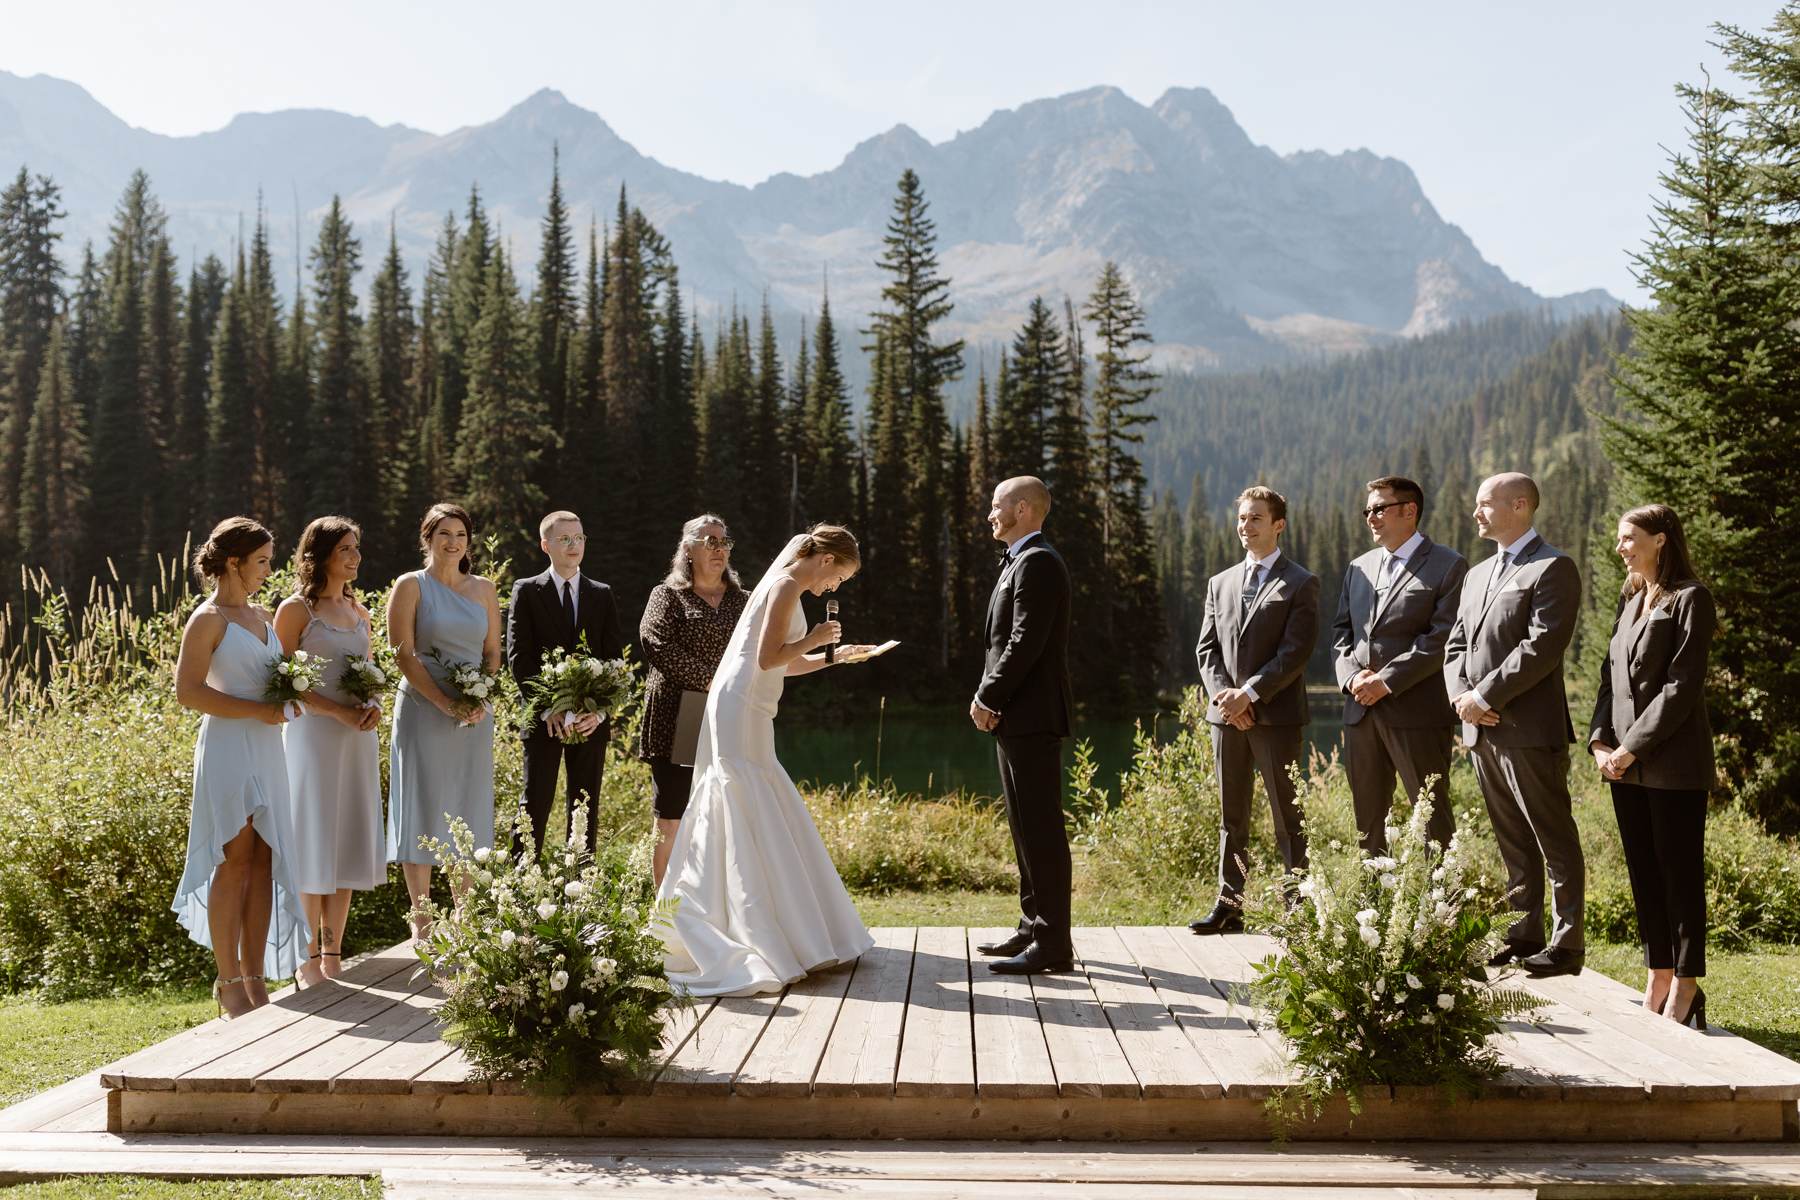 Fernie Wedding Photographers at Island Lake Lodge - Image 17